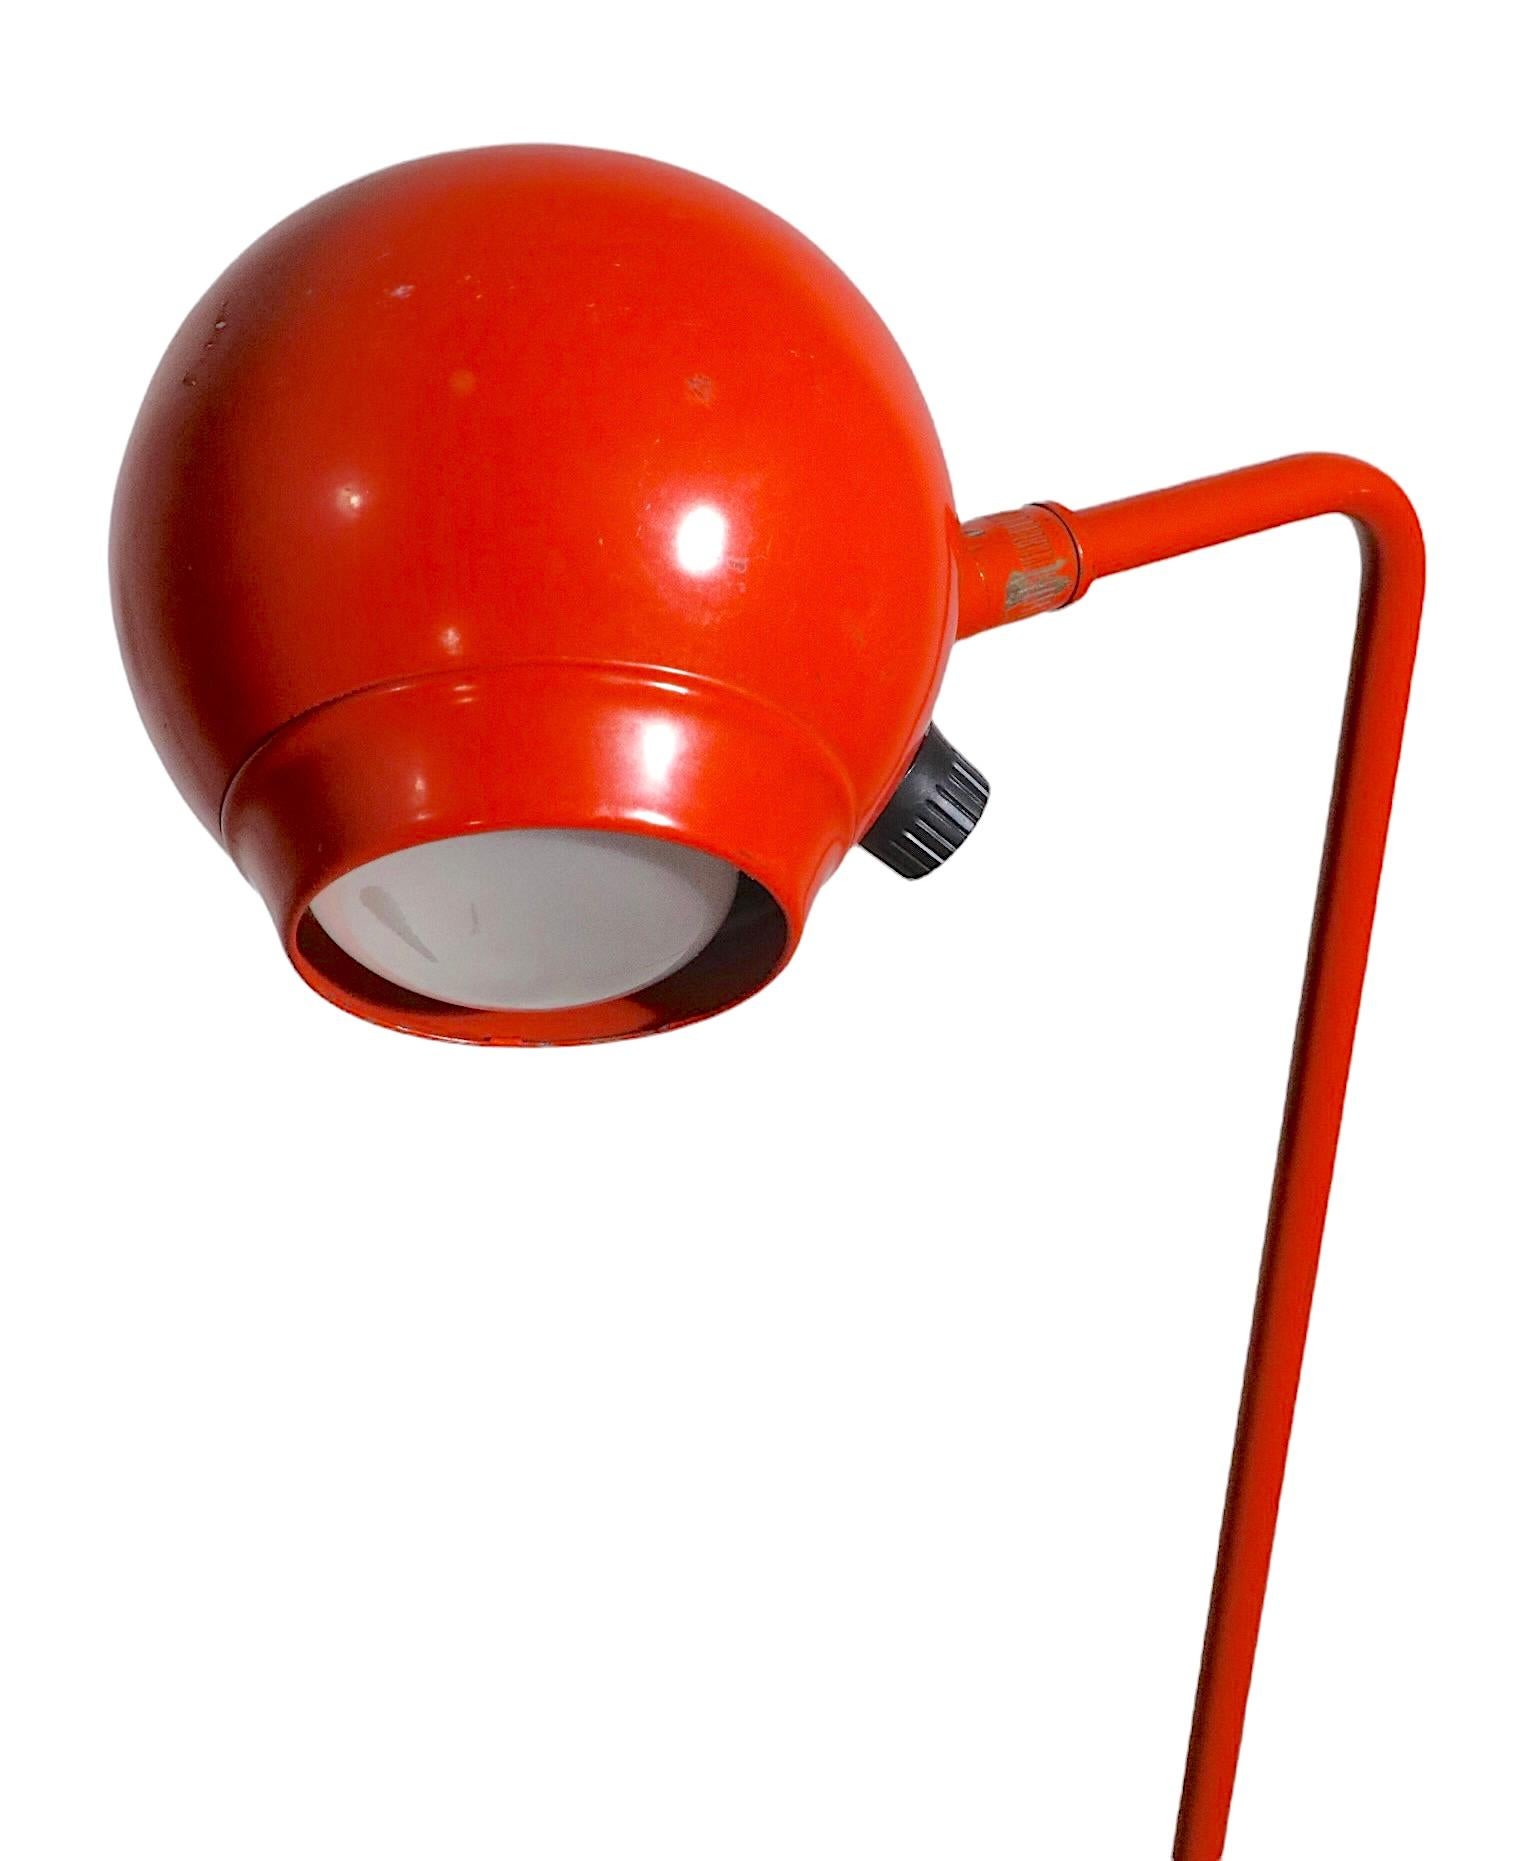 Robert Sonneman for George Kovacs Eyeball Floor Lamp in Orange Finish c 1970's For Sale 2